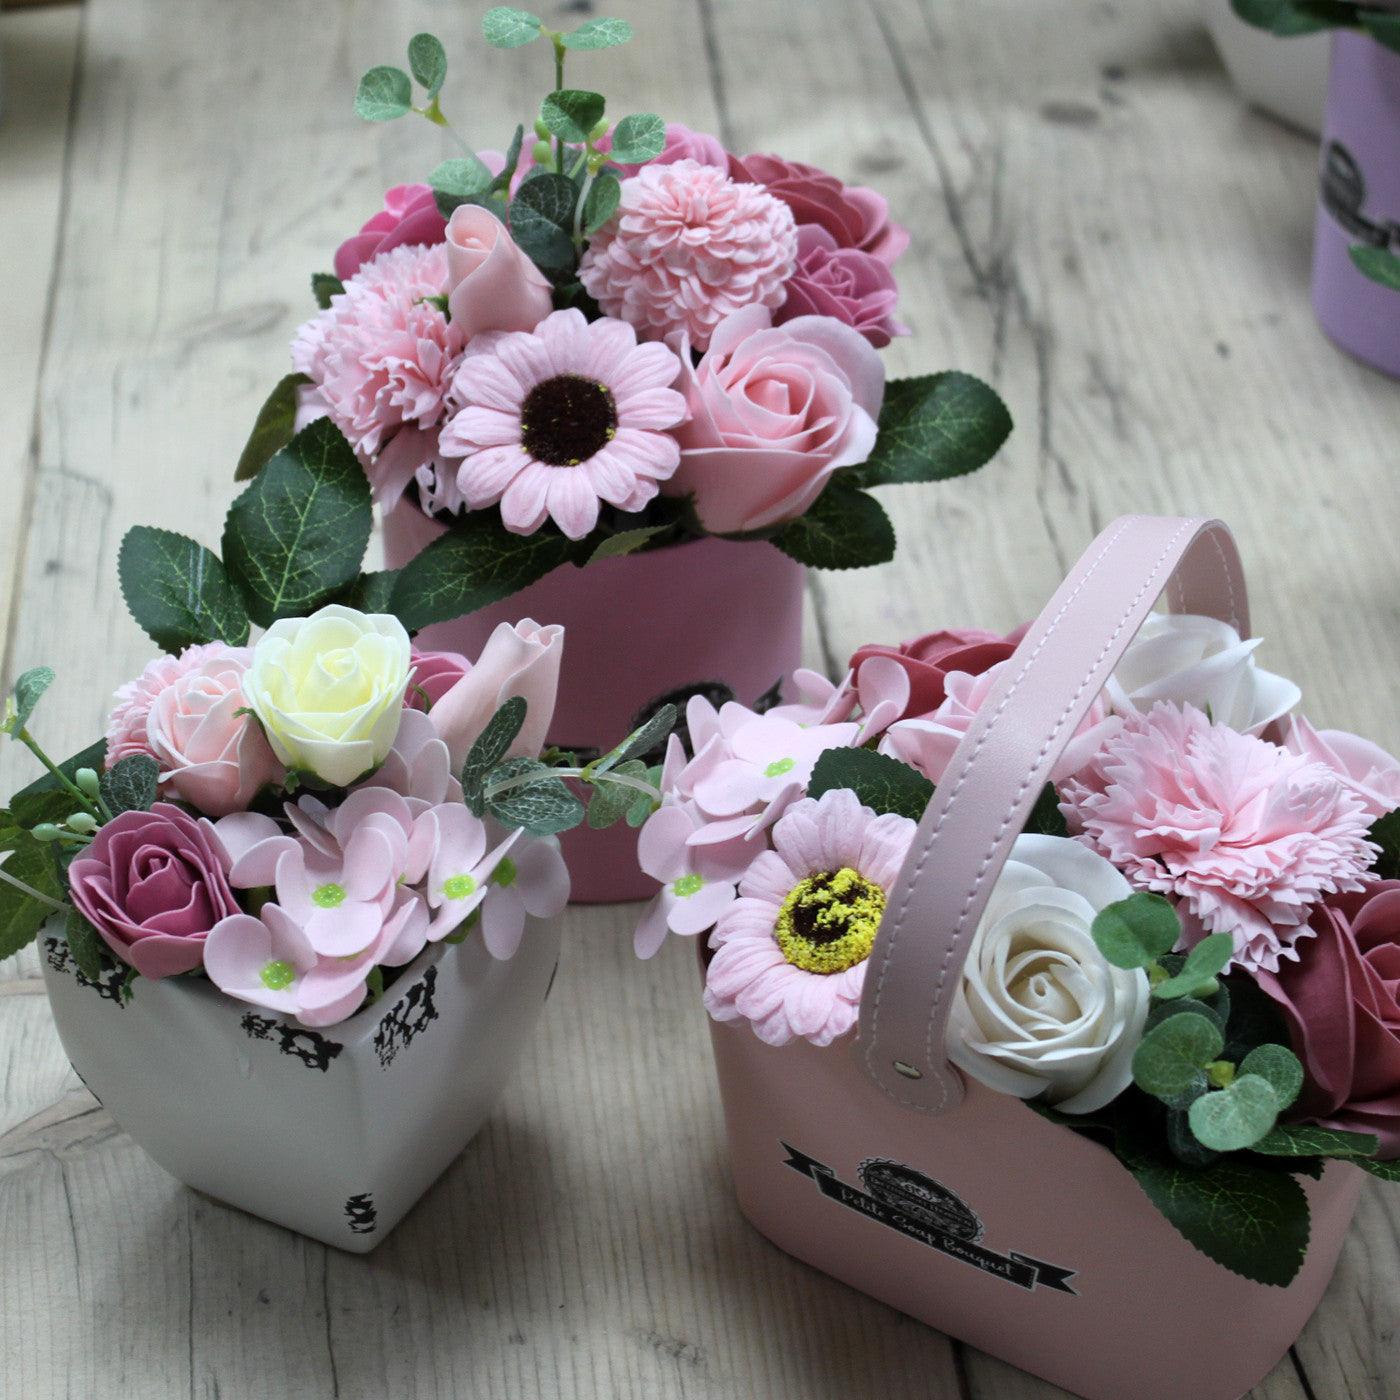 Soap Bouquet Petite Flower Pot - Peaceful Pink - Charming Spaces